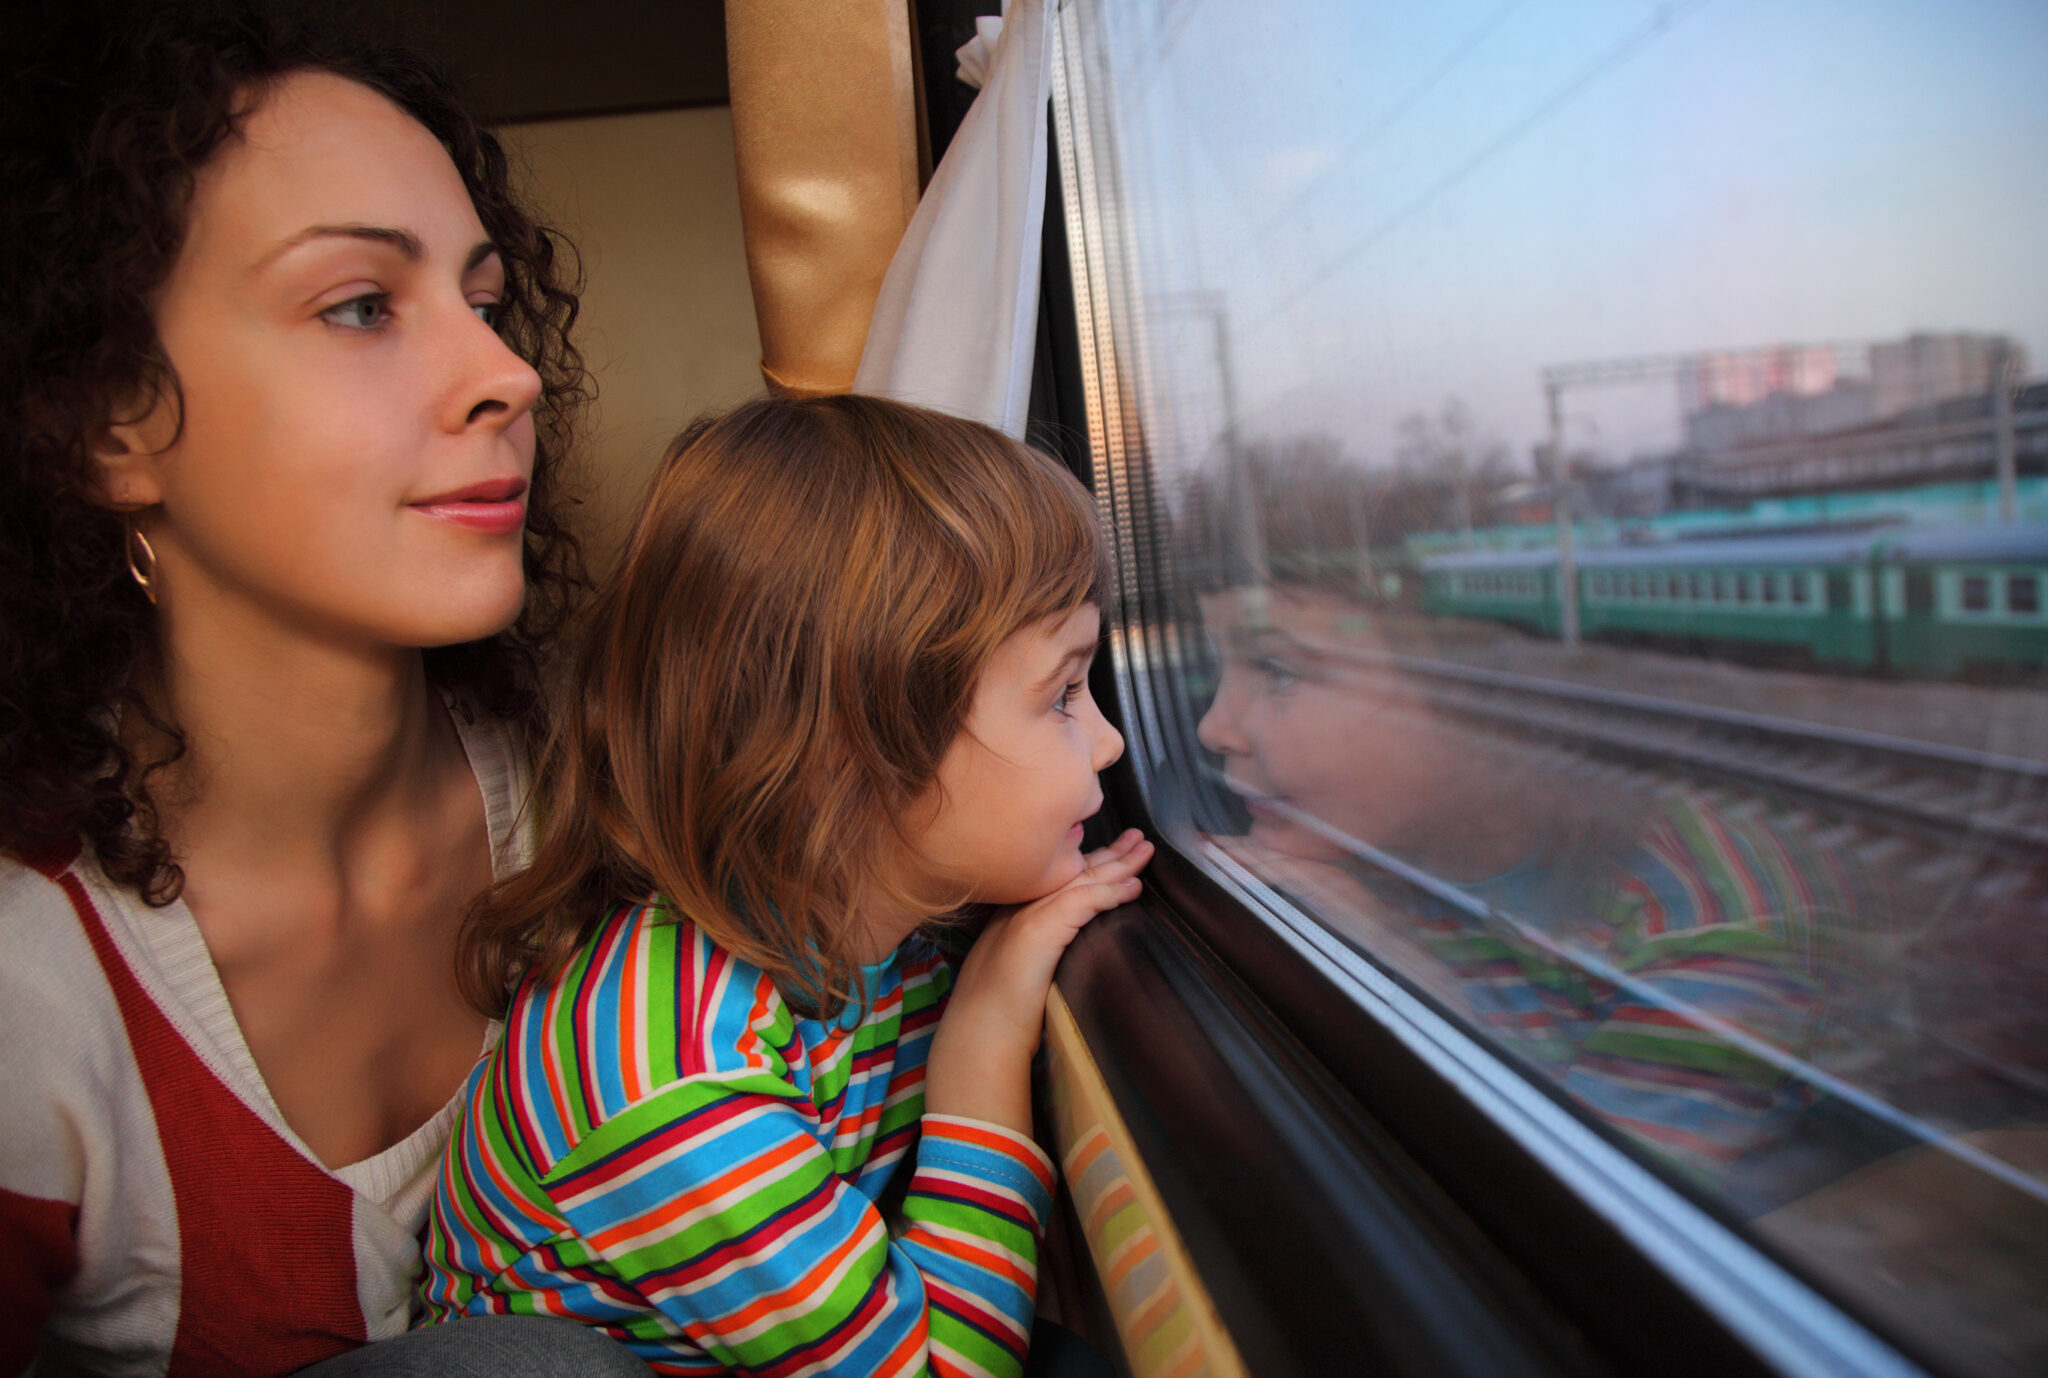 12 поезда мама. Мама и дочка в электричке. В поезде с дочерьми. Семья в поезде. Девочка в электричке с мамой.